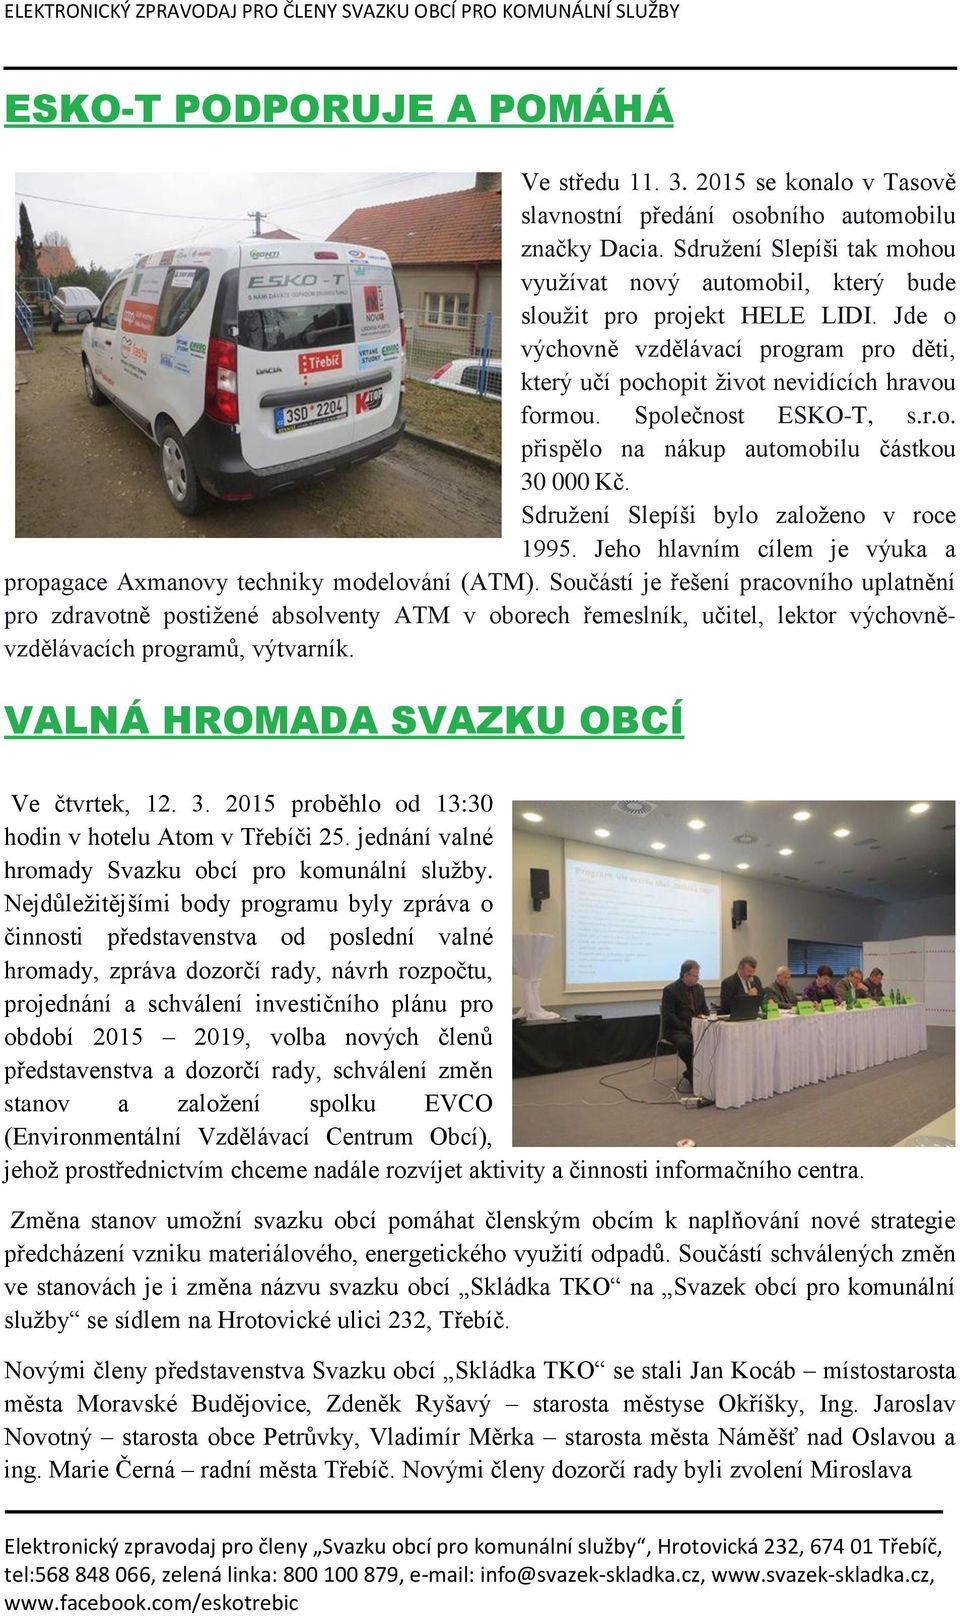 Společnost ESKO-T, s.r.o. přispělo na nákup automobilu částkou 30 000 Kč. Sdružení Slepíši bylo založeno v roce 1995. Jeho hlavním cílem je výuka a propagace Axmanovy techniky modelování (ATM).